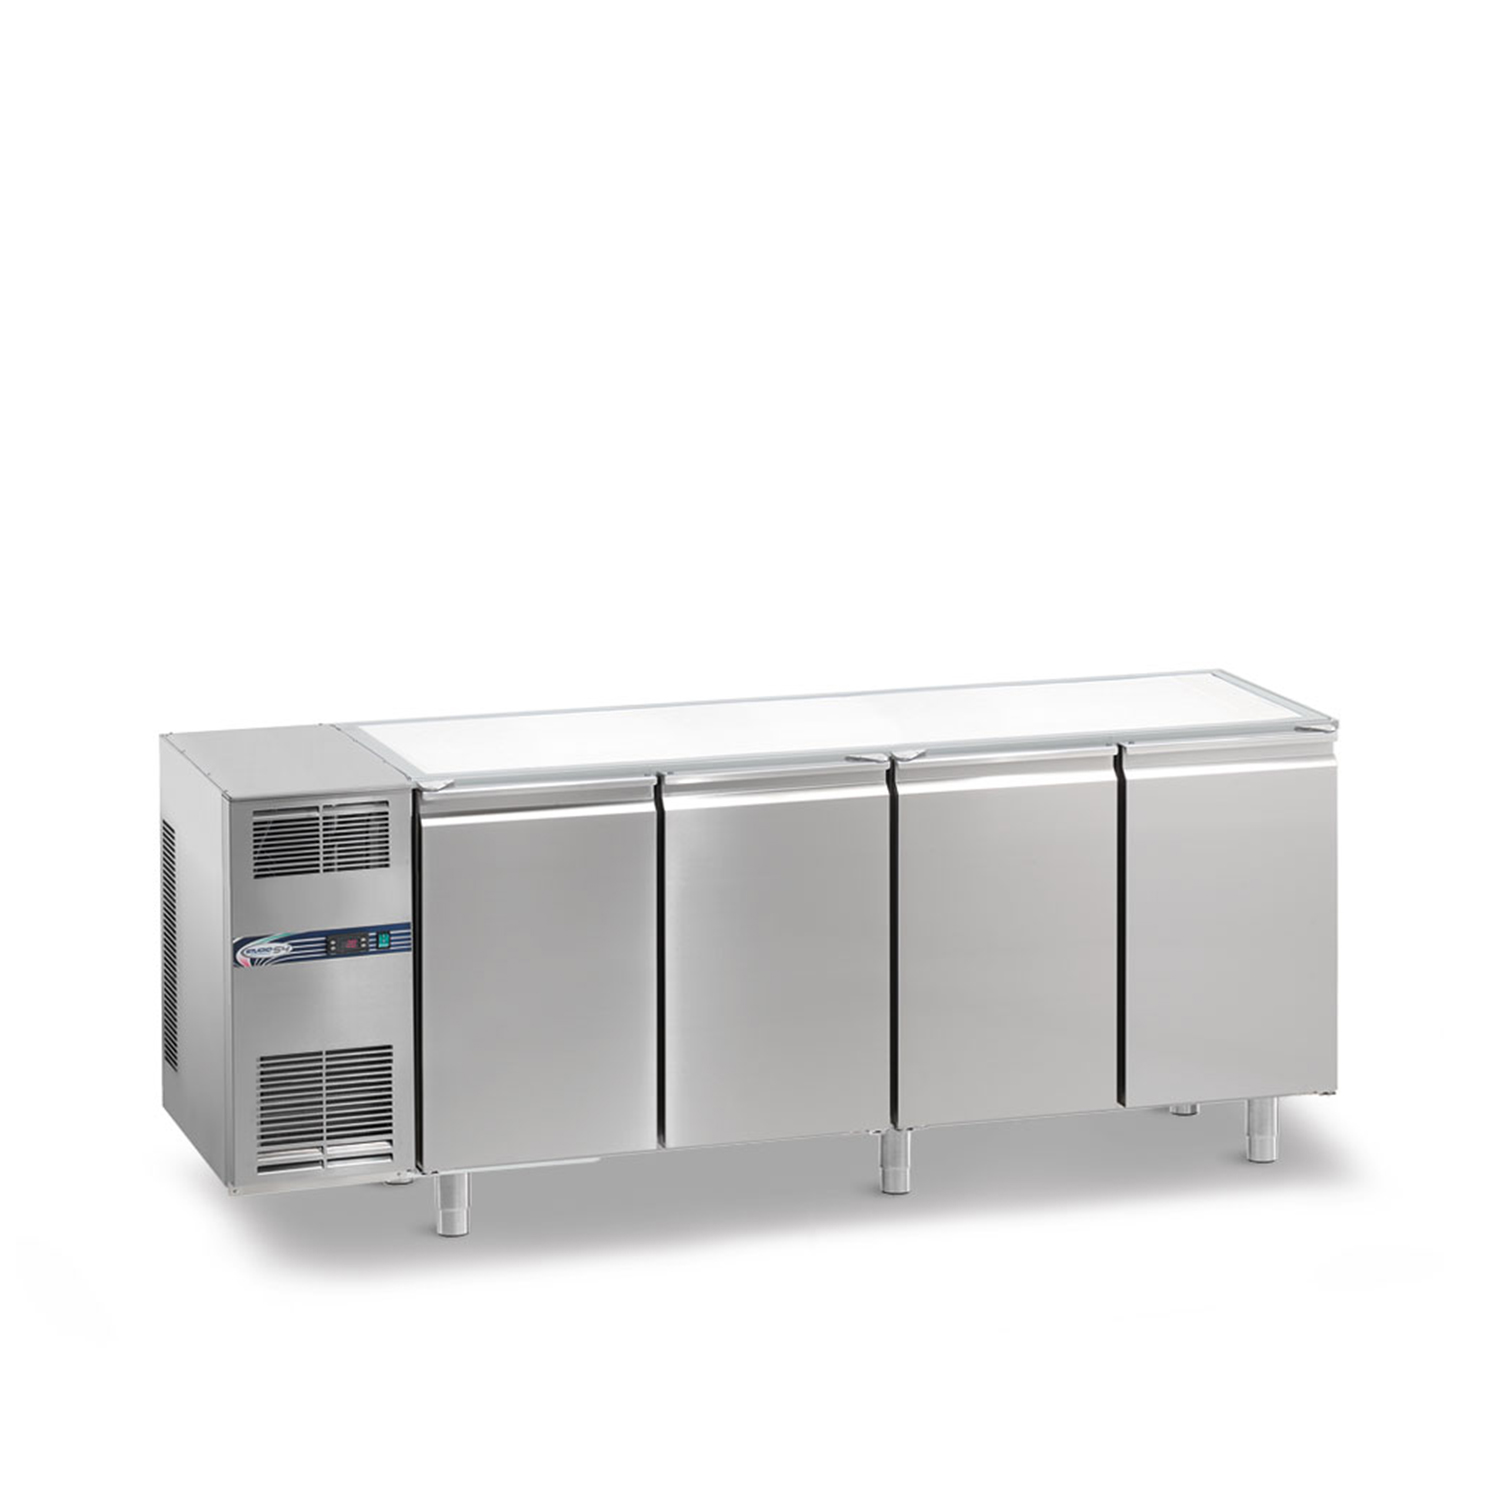 Tiefkühltisch DAIQUIRI Top Line H710 GN 1/1, B 2200  x T 700 x H 860 mm, 4 Kühlfächer, ohne Arbeitsplatte